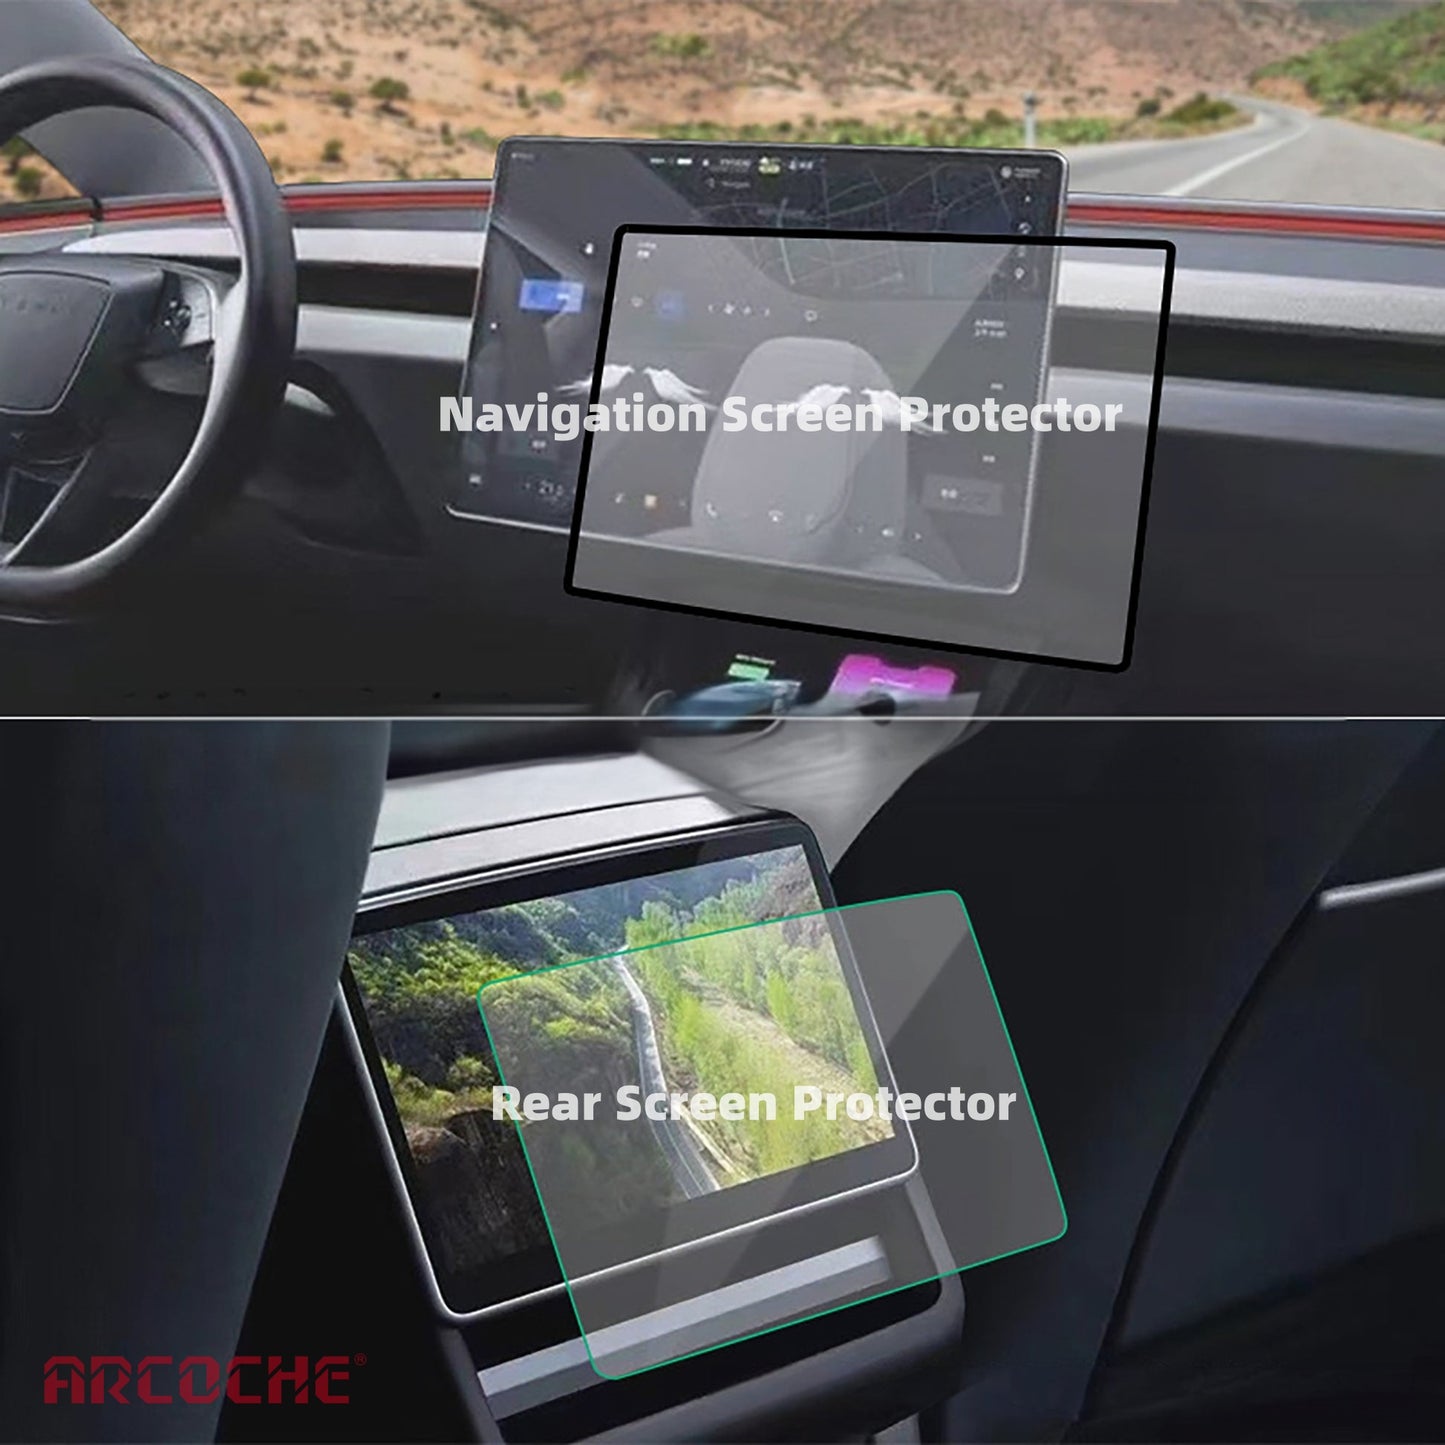 Protections d’écran avant et arrière pour Tesla Model 3 Highland